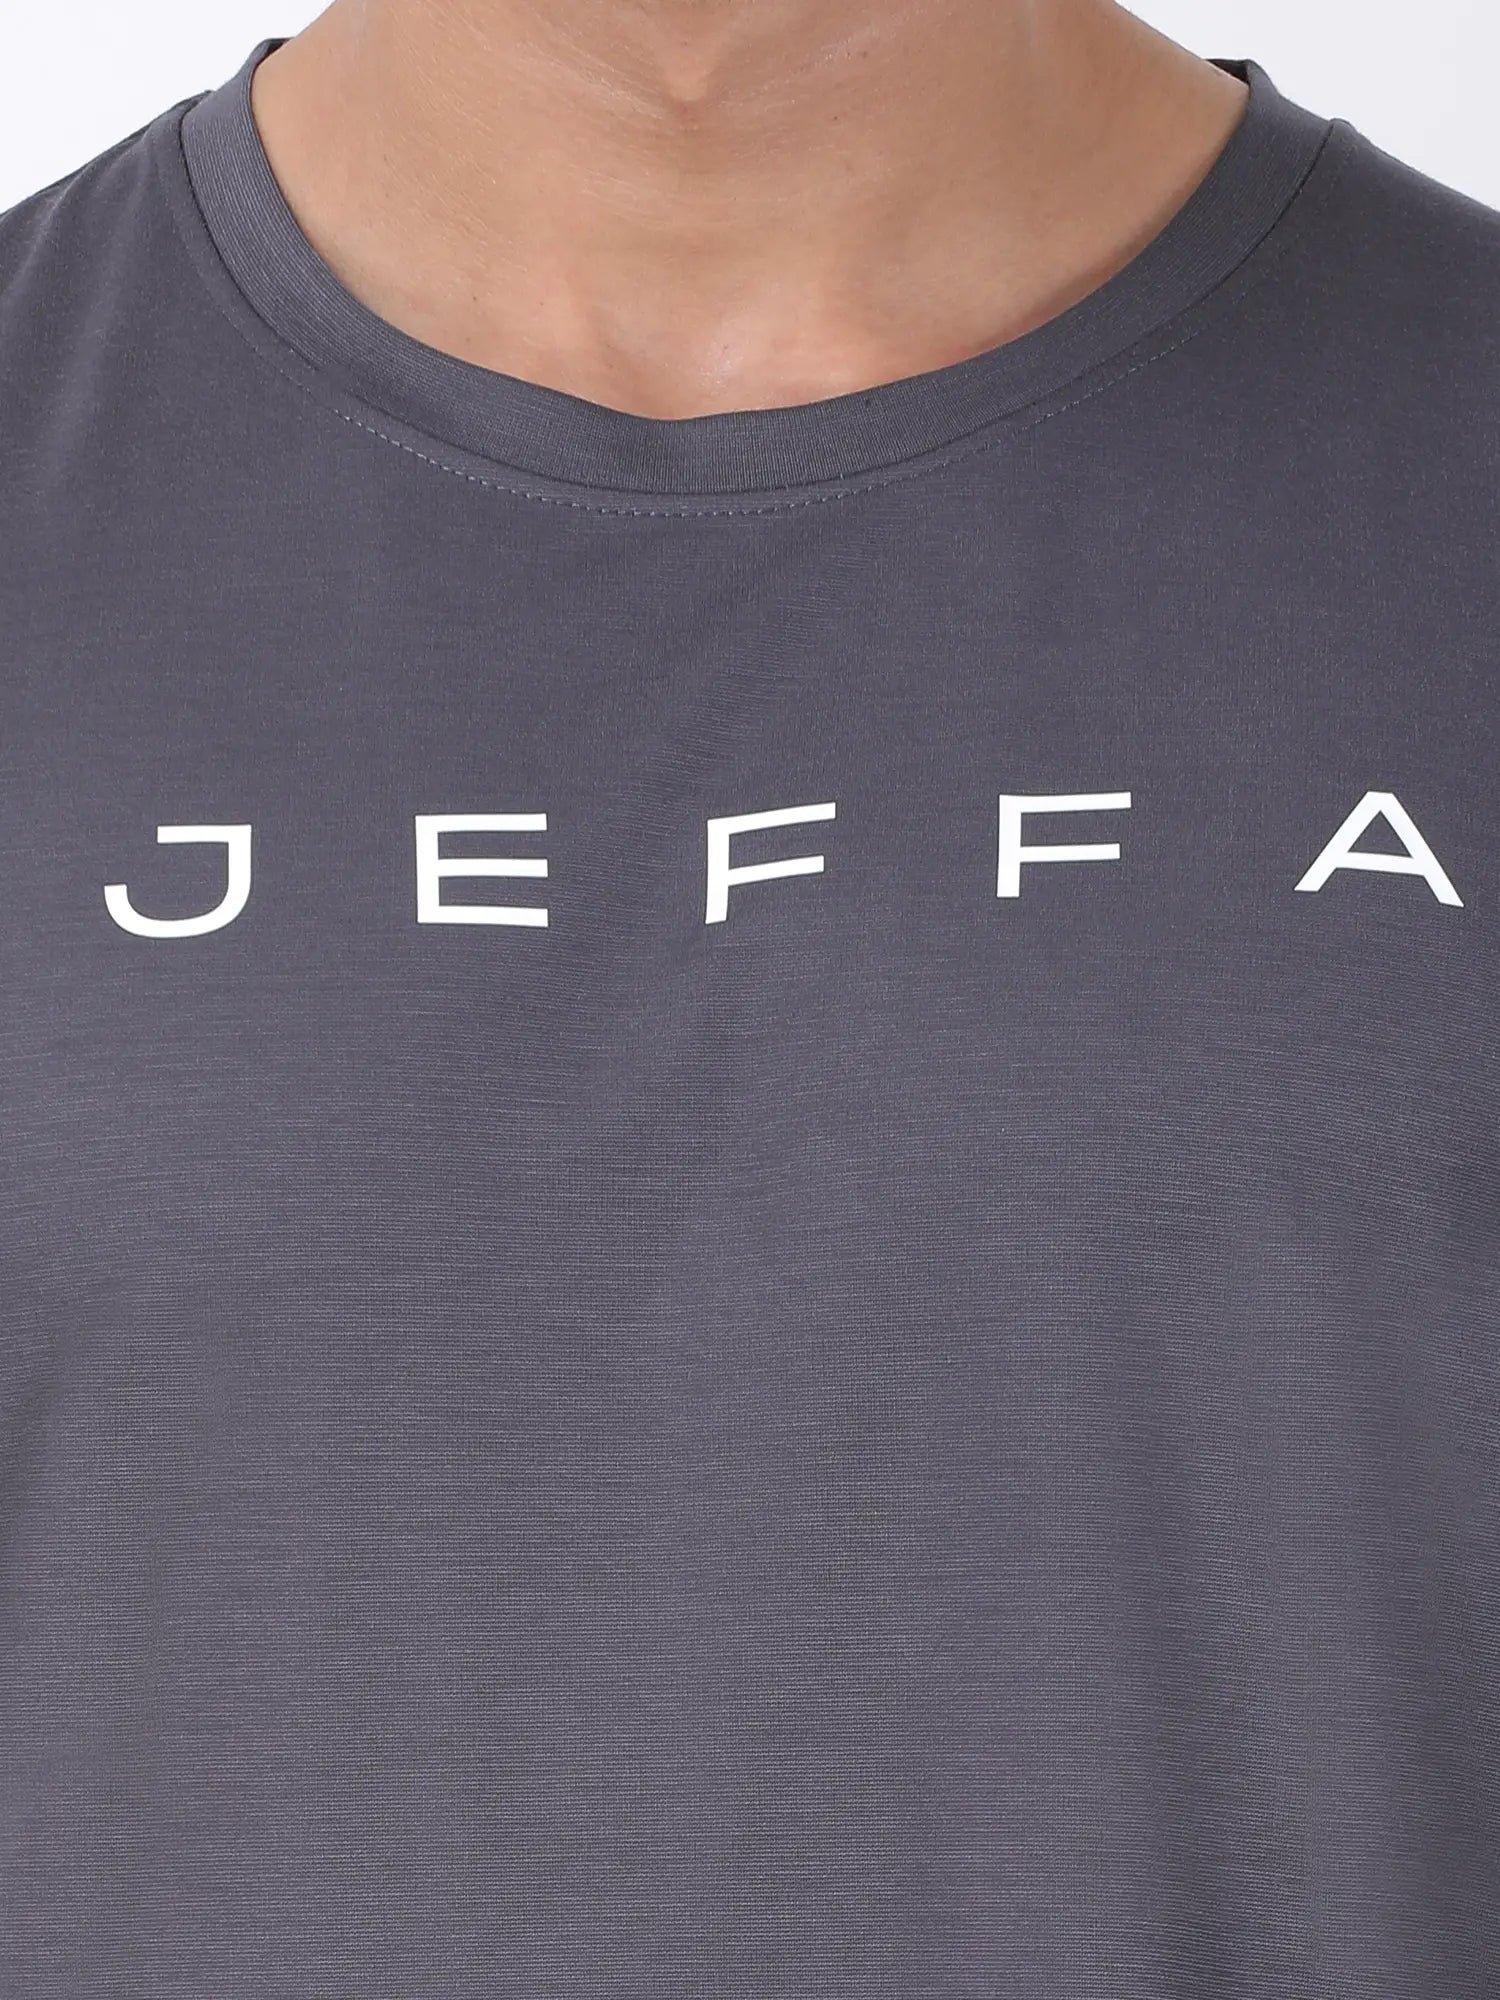 Jeffa Powercore Deep Cut Vest in Grey